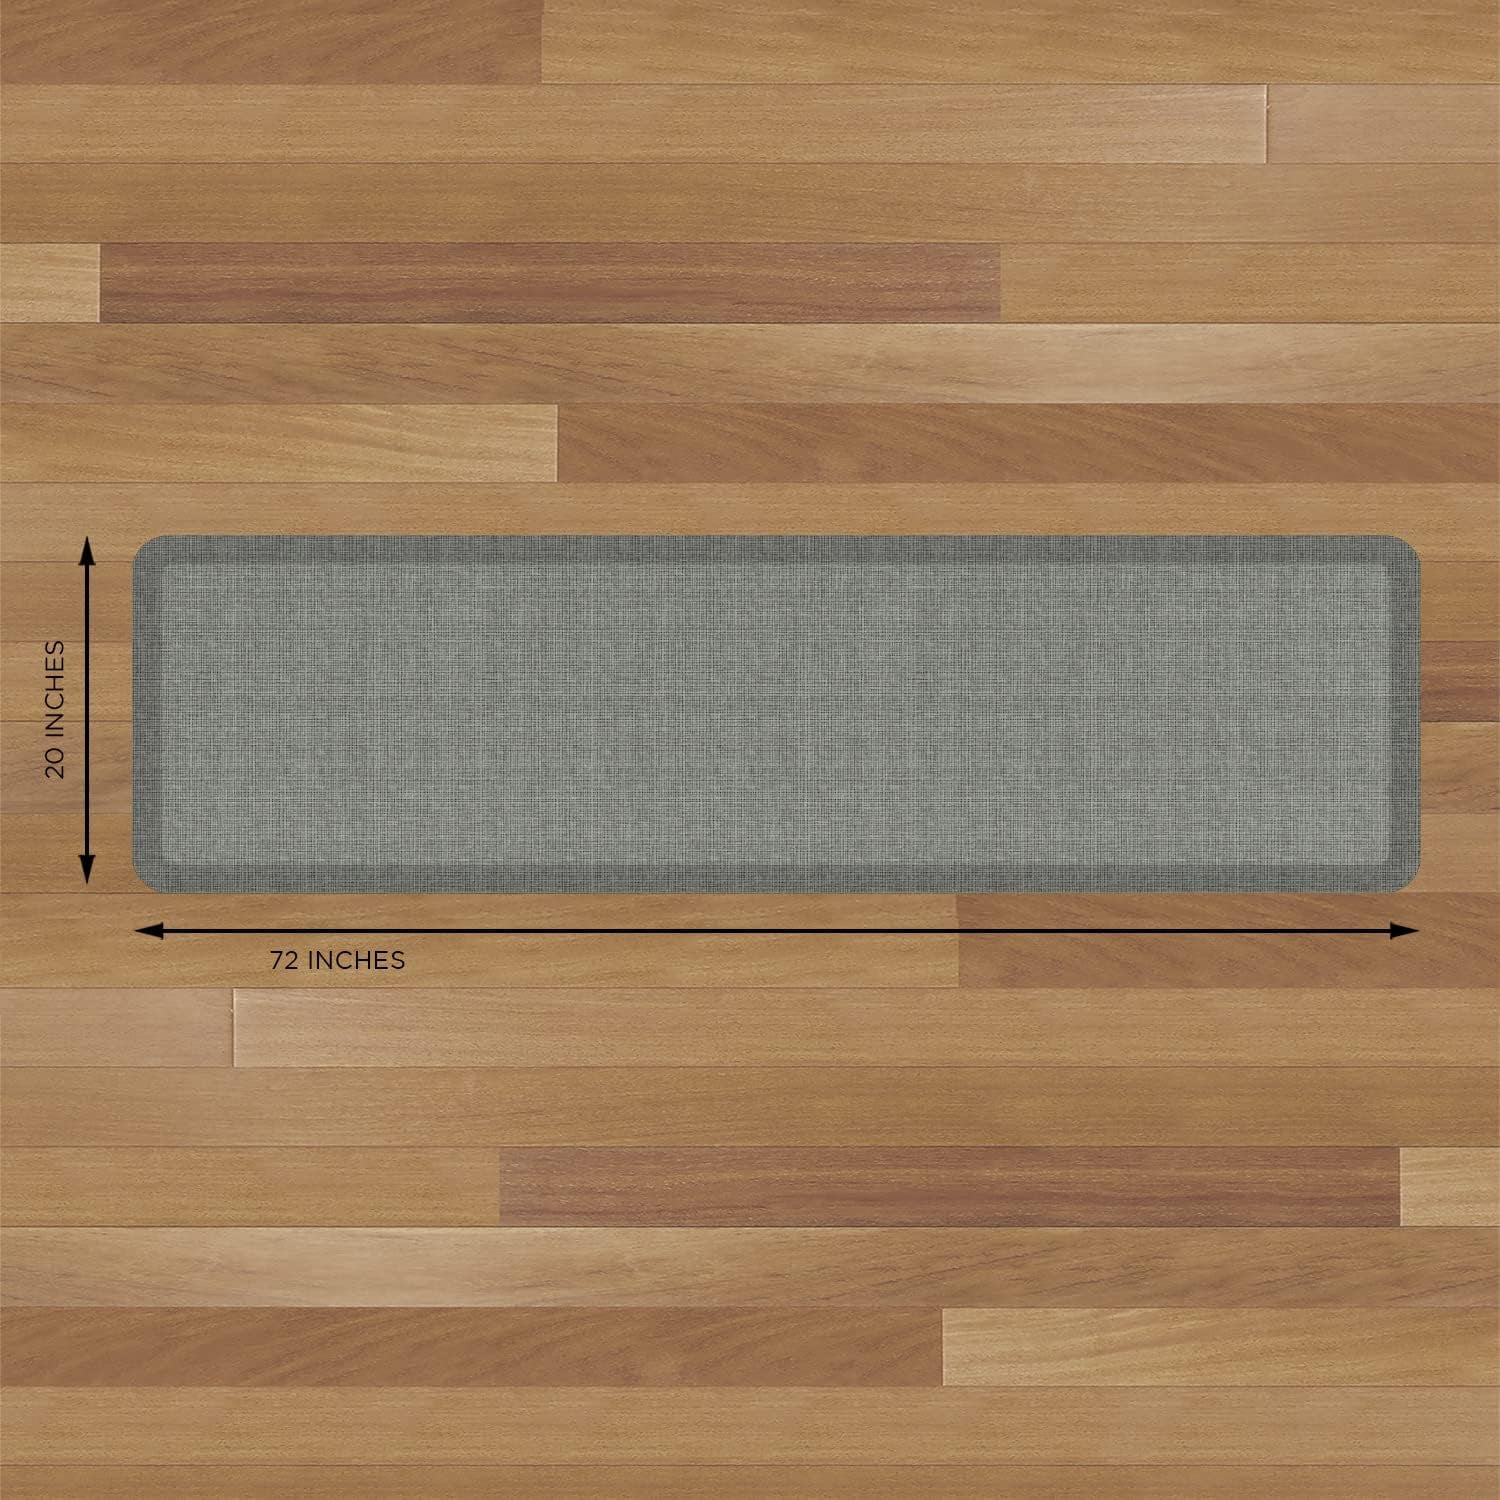 Newlife by GelPro Designer Comfort Kitchen Floor Mat 20x72 Tweed Antique White, Size: 20 inch x 72 inch